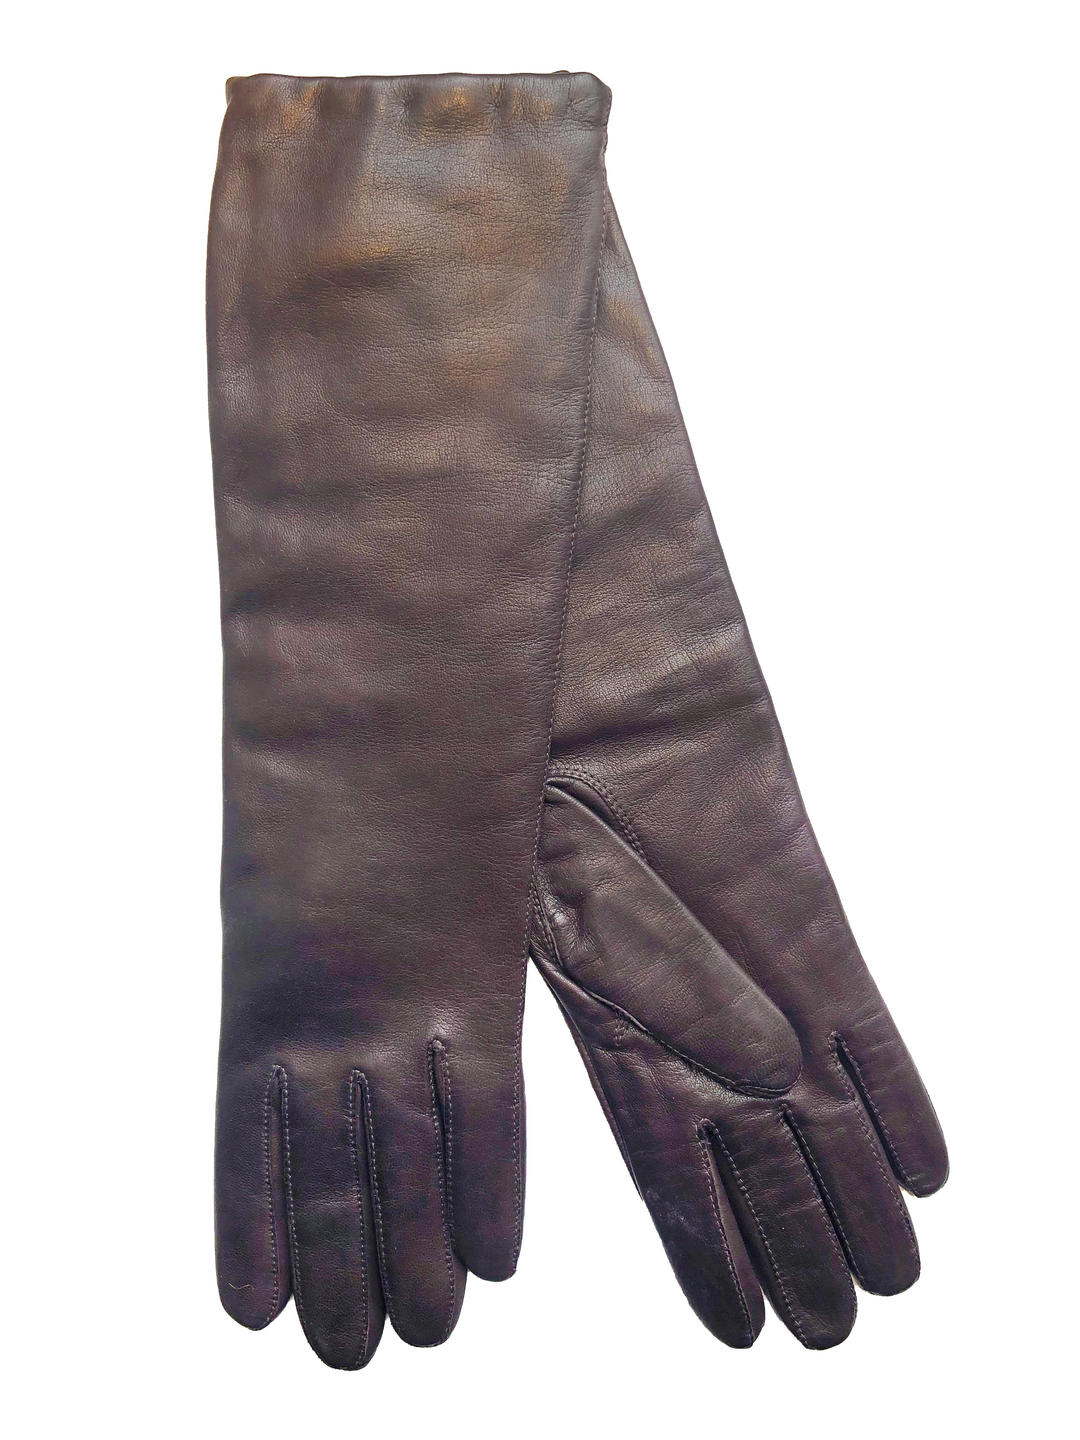 RH Handsker 201528 - Leather - Long Gloves - Brown